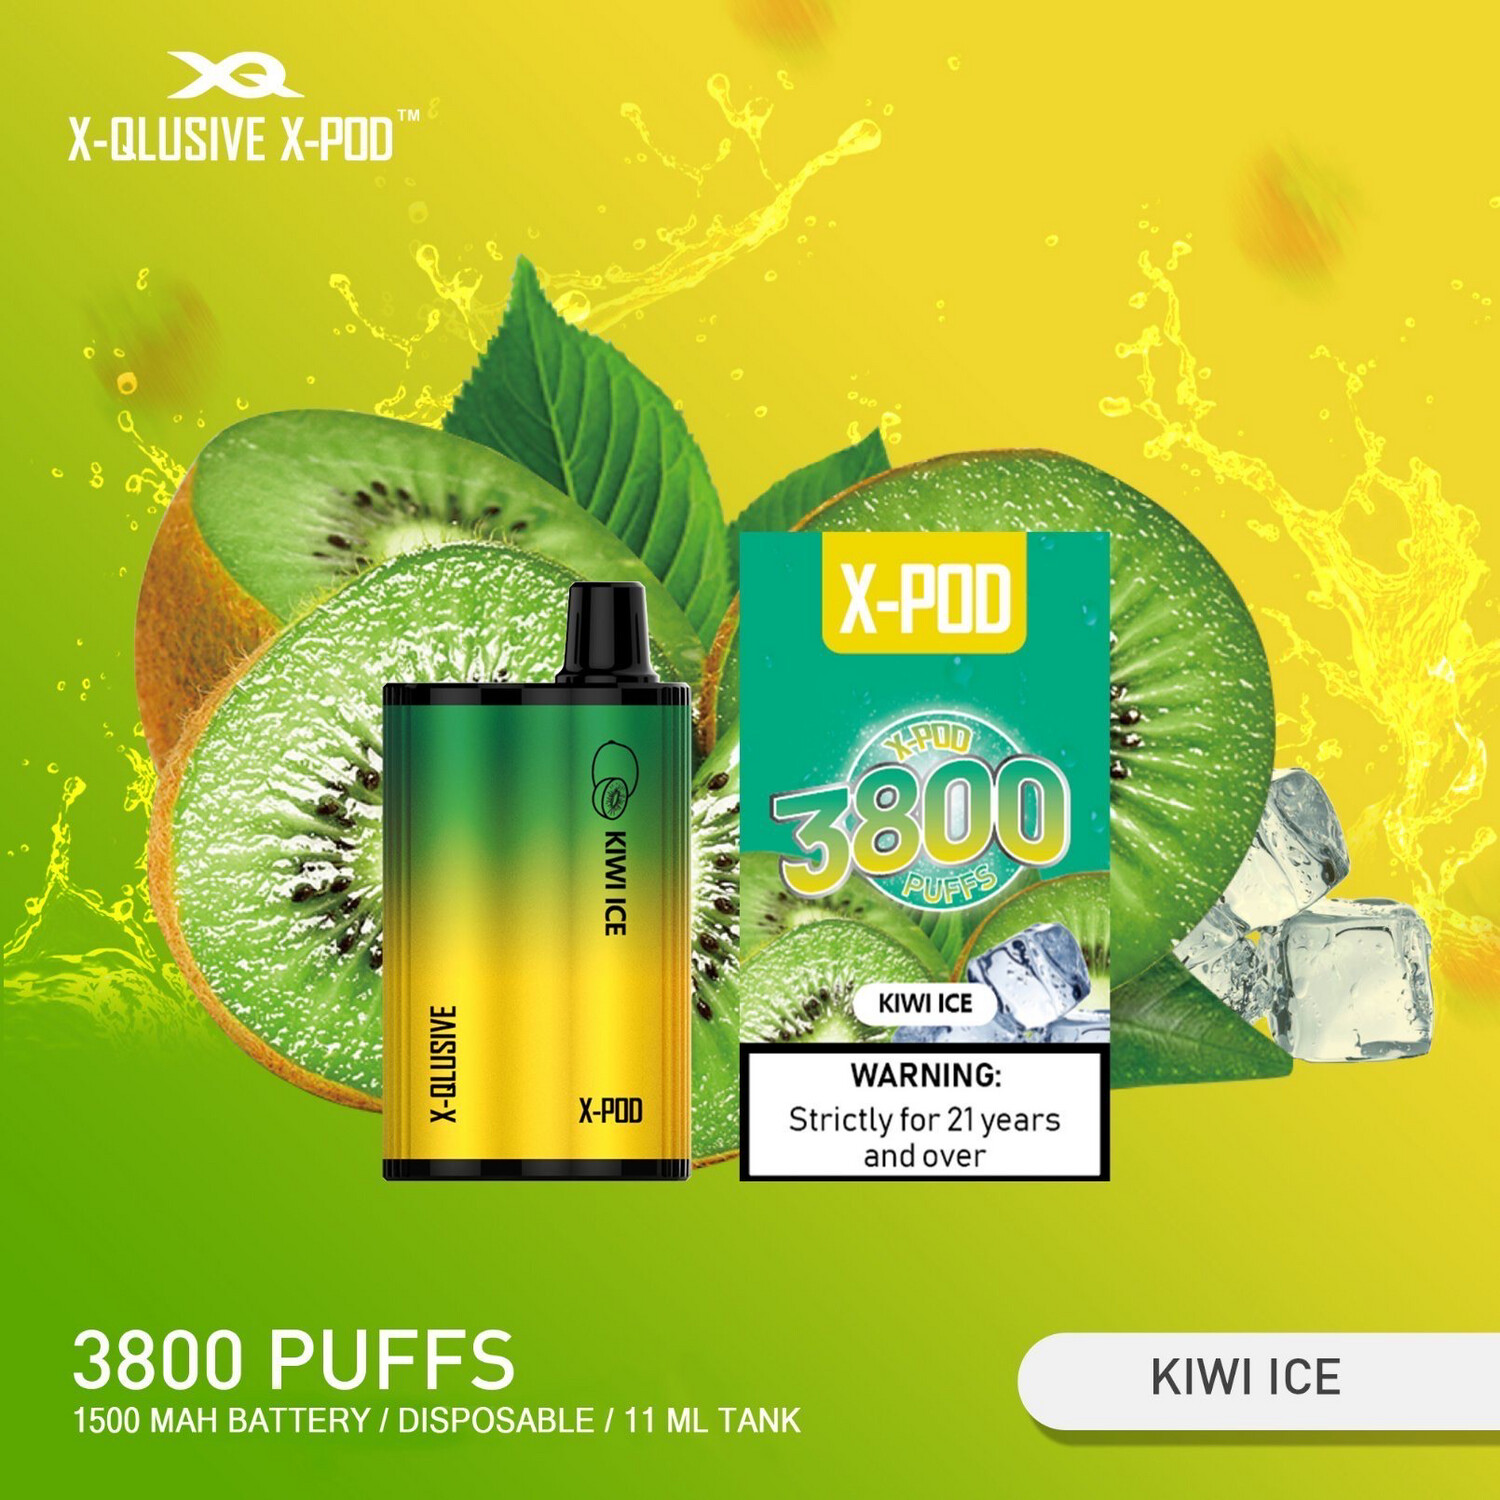 XPOD Kiwi Ice